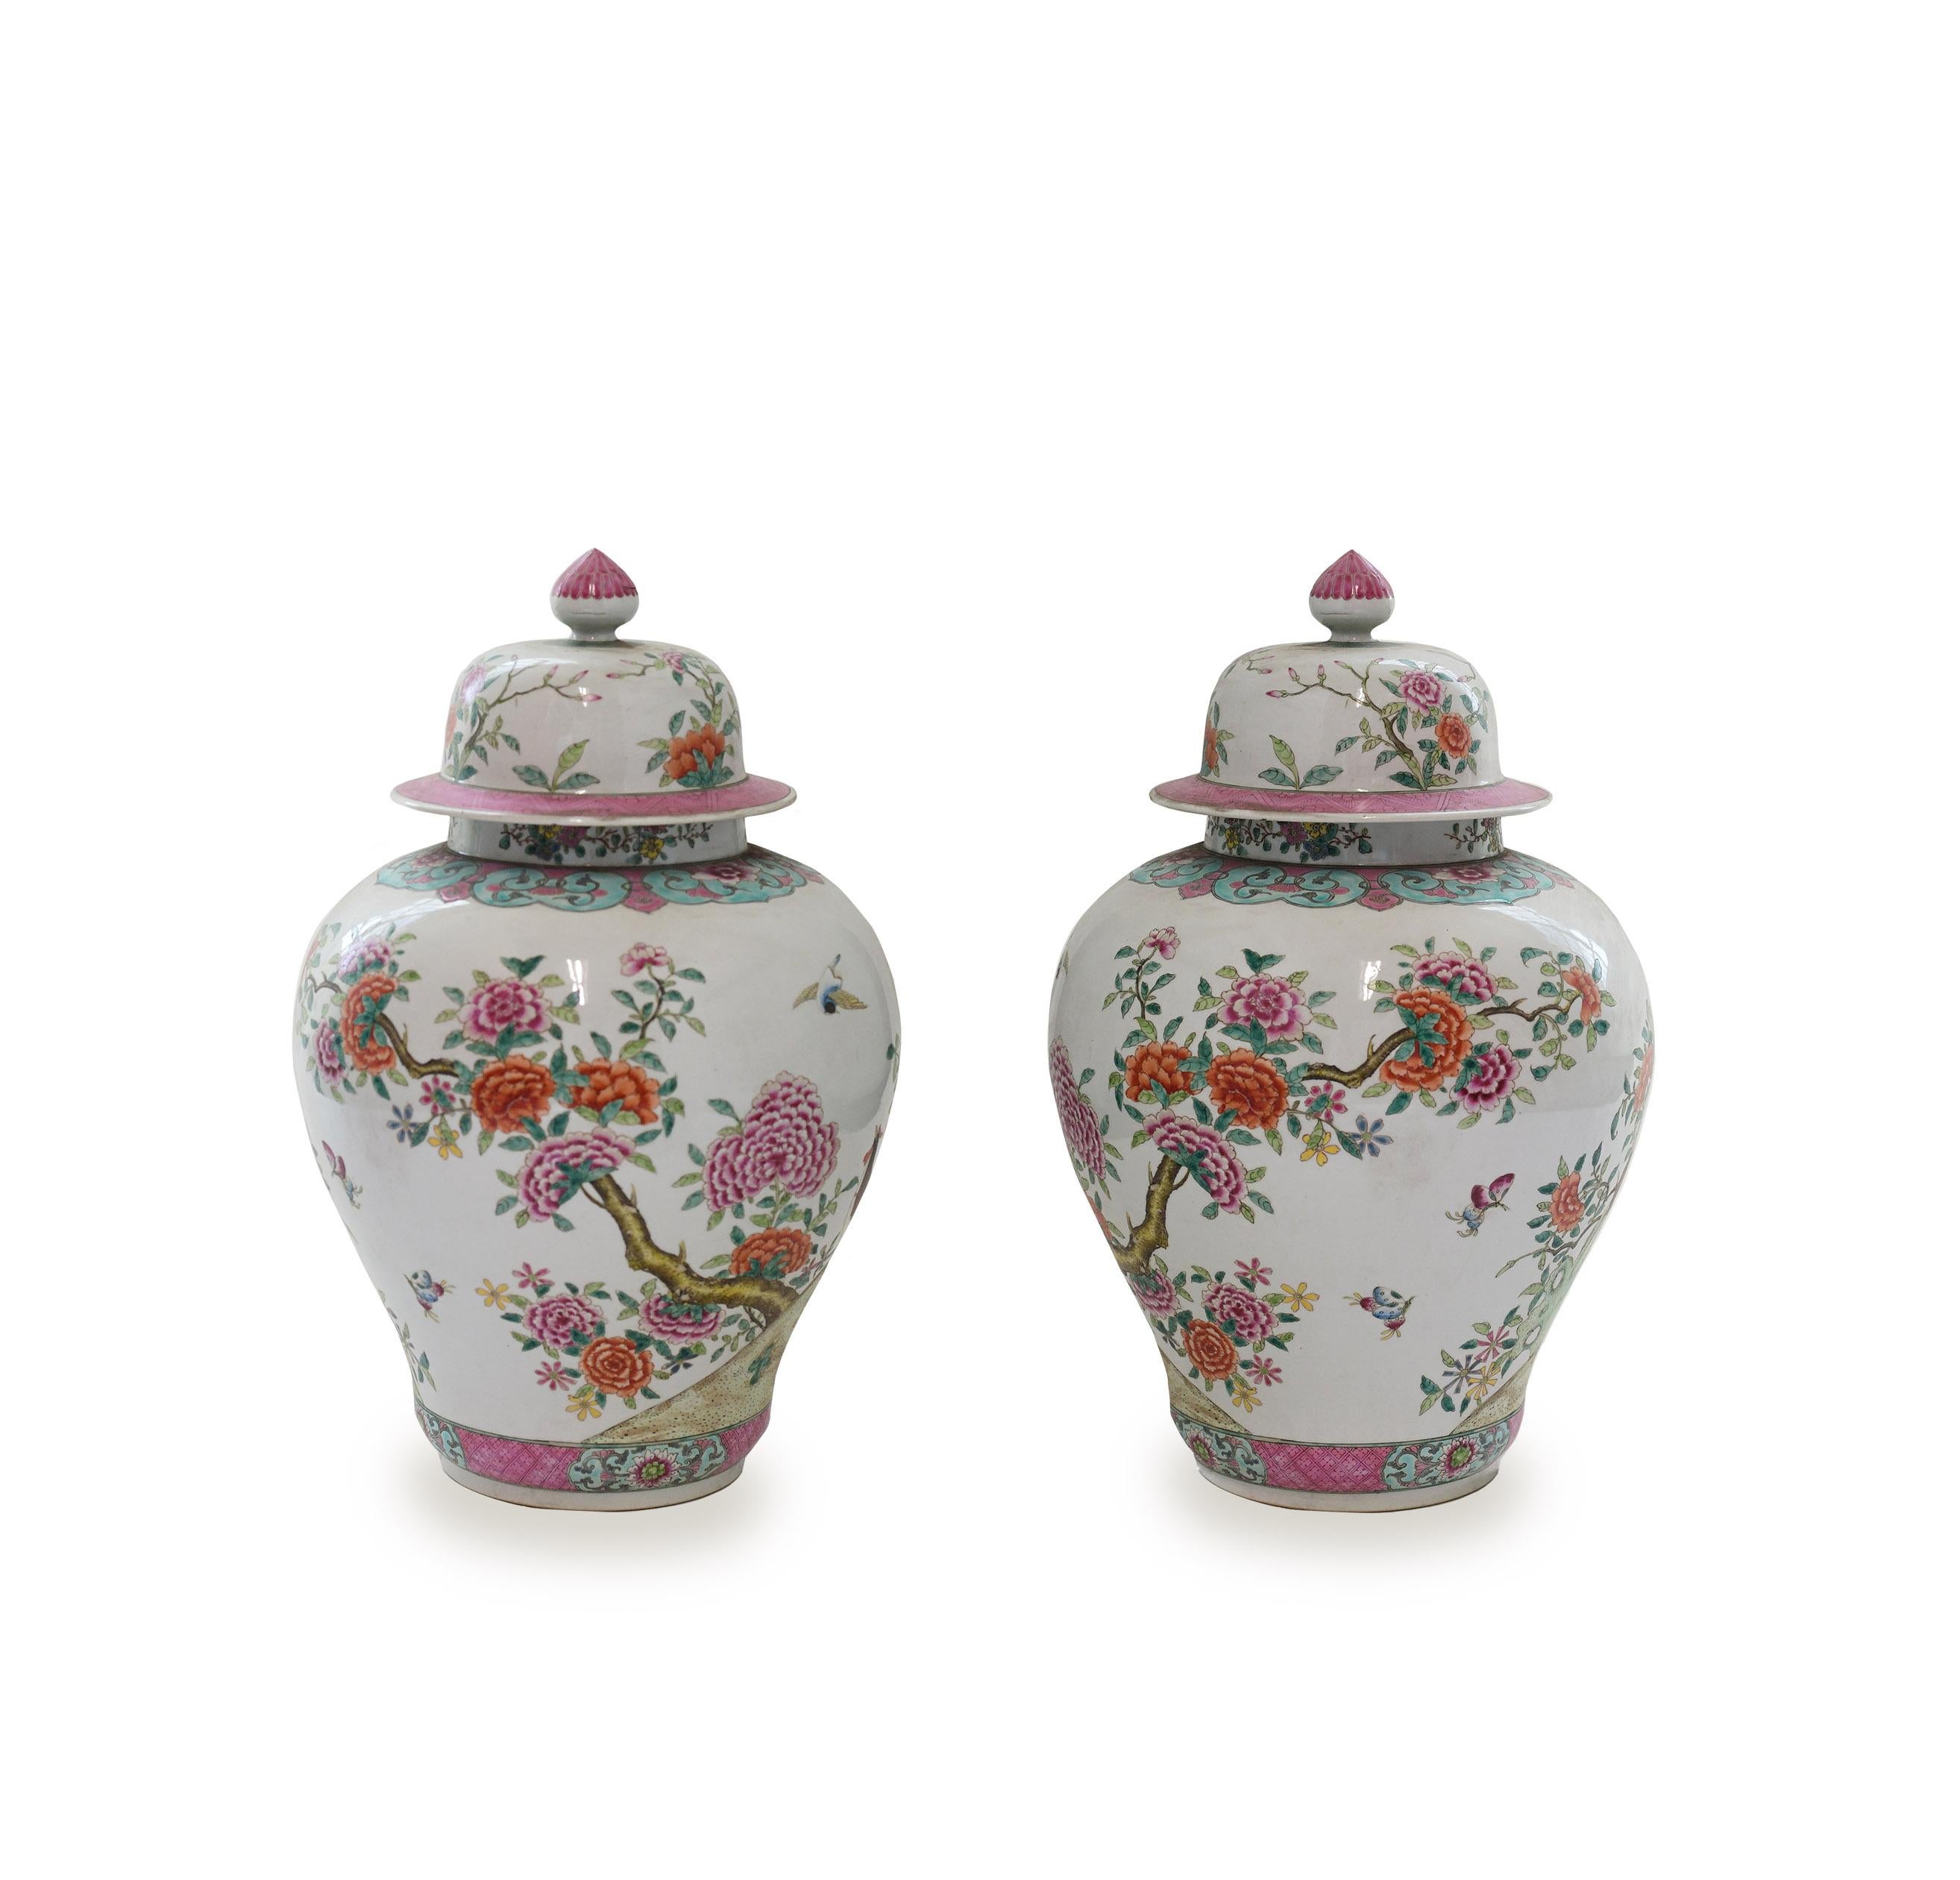 Vases en porcelaine finement peinte à décor de fleurs.
Le fond de la porcelaine est de 7,5 in/D.